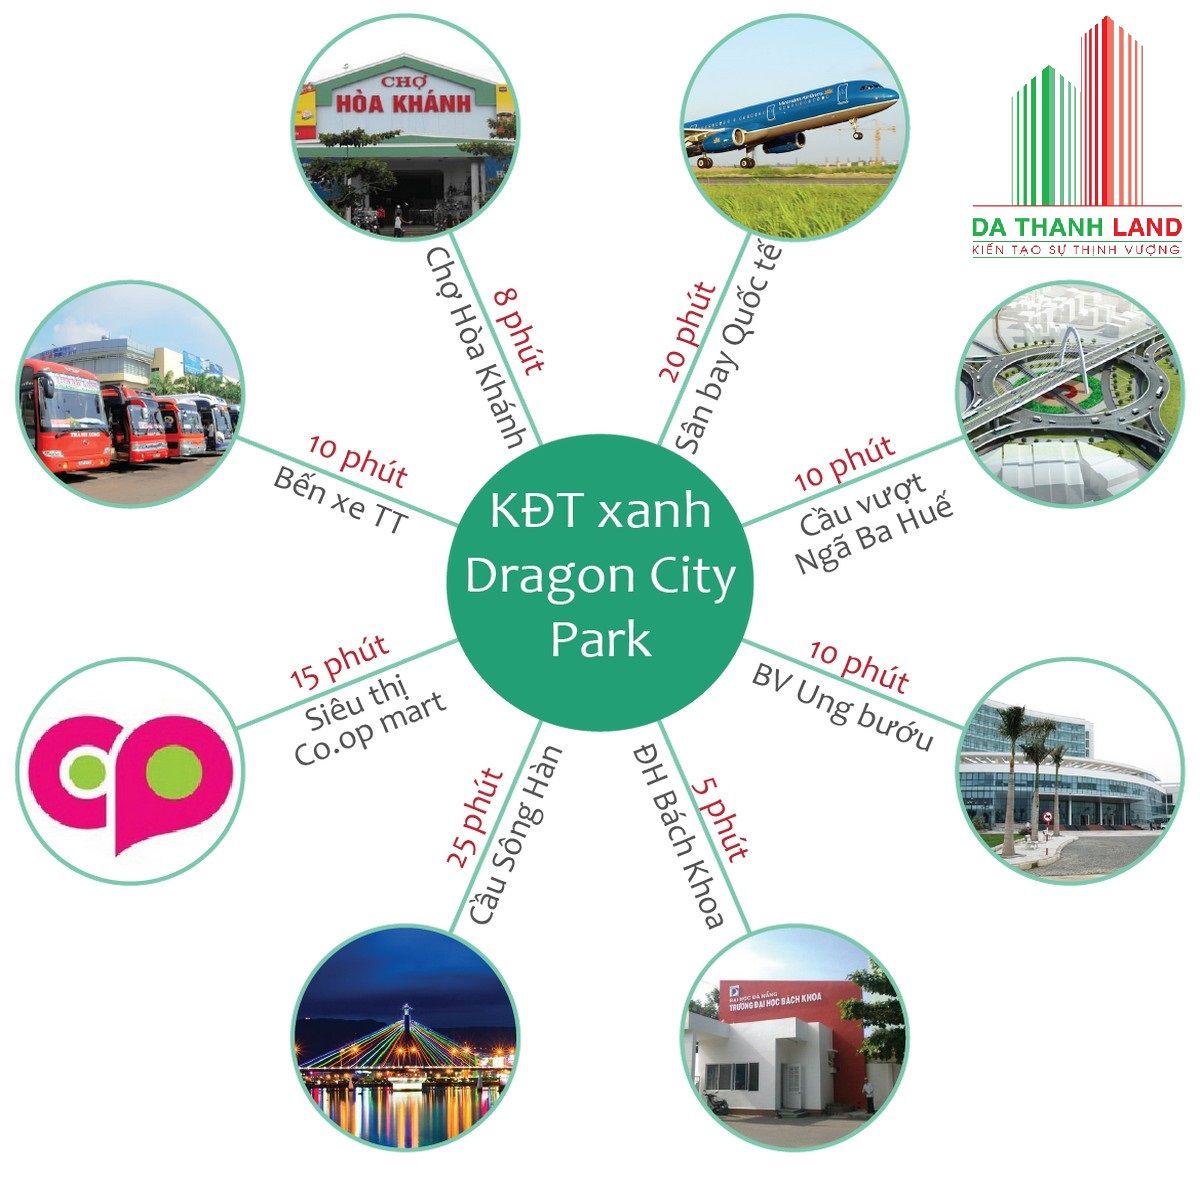 Tiện ích xung quanh dự án Dragon City Park